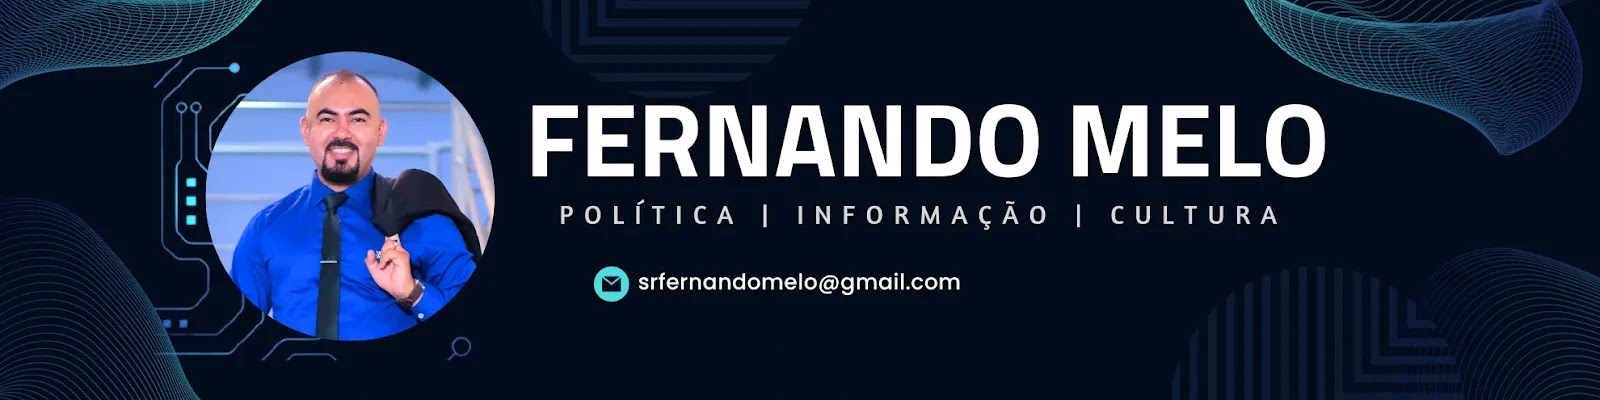 Blog do Fernando Melo – Política, informação e cultura!